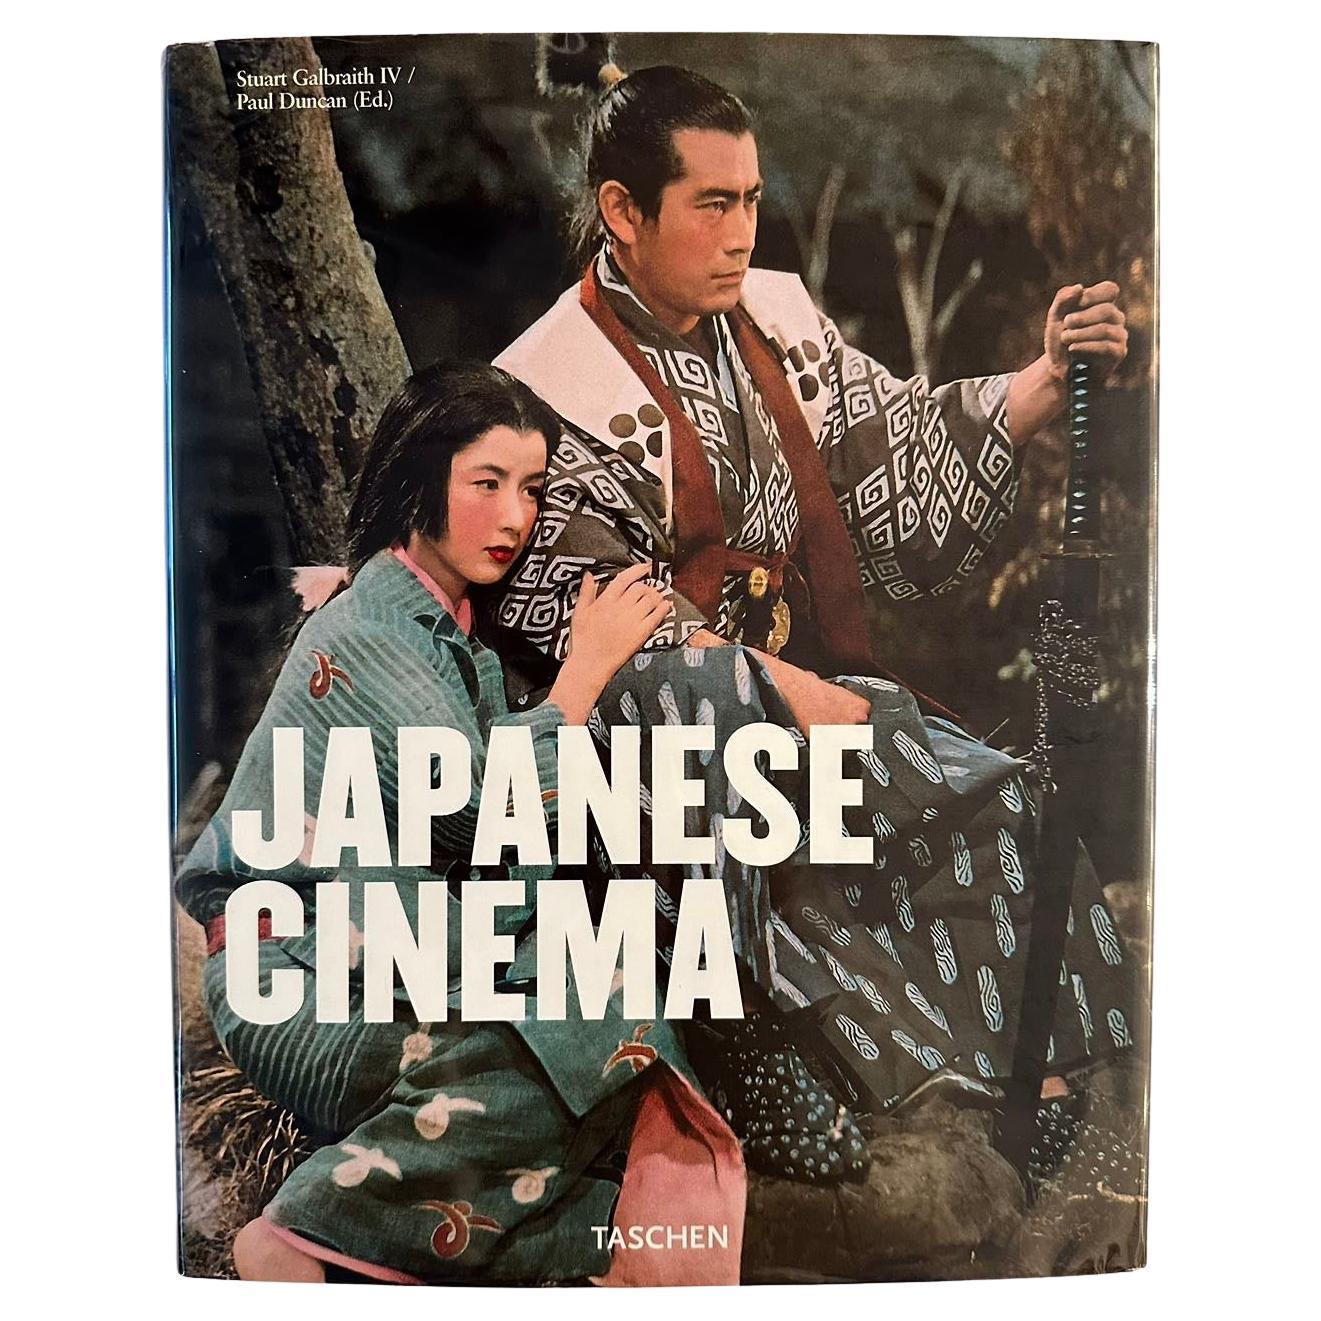 Japanese Cinema by Stuart Galbraith IV/Paul Duncan For Sale